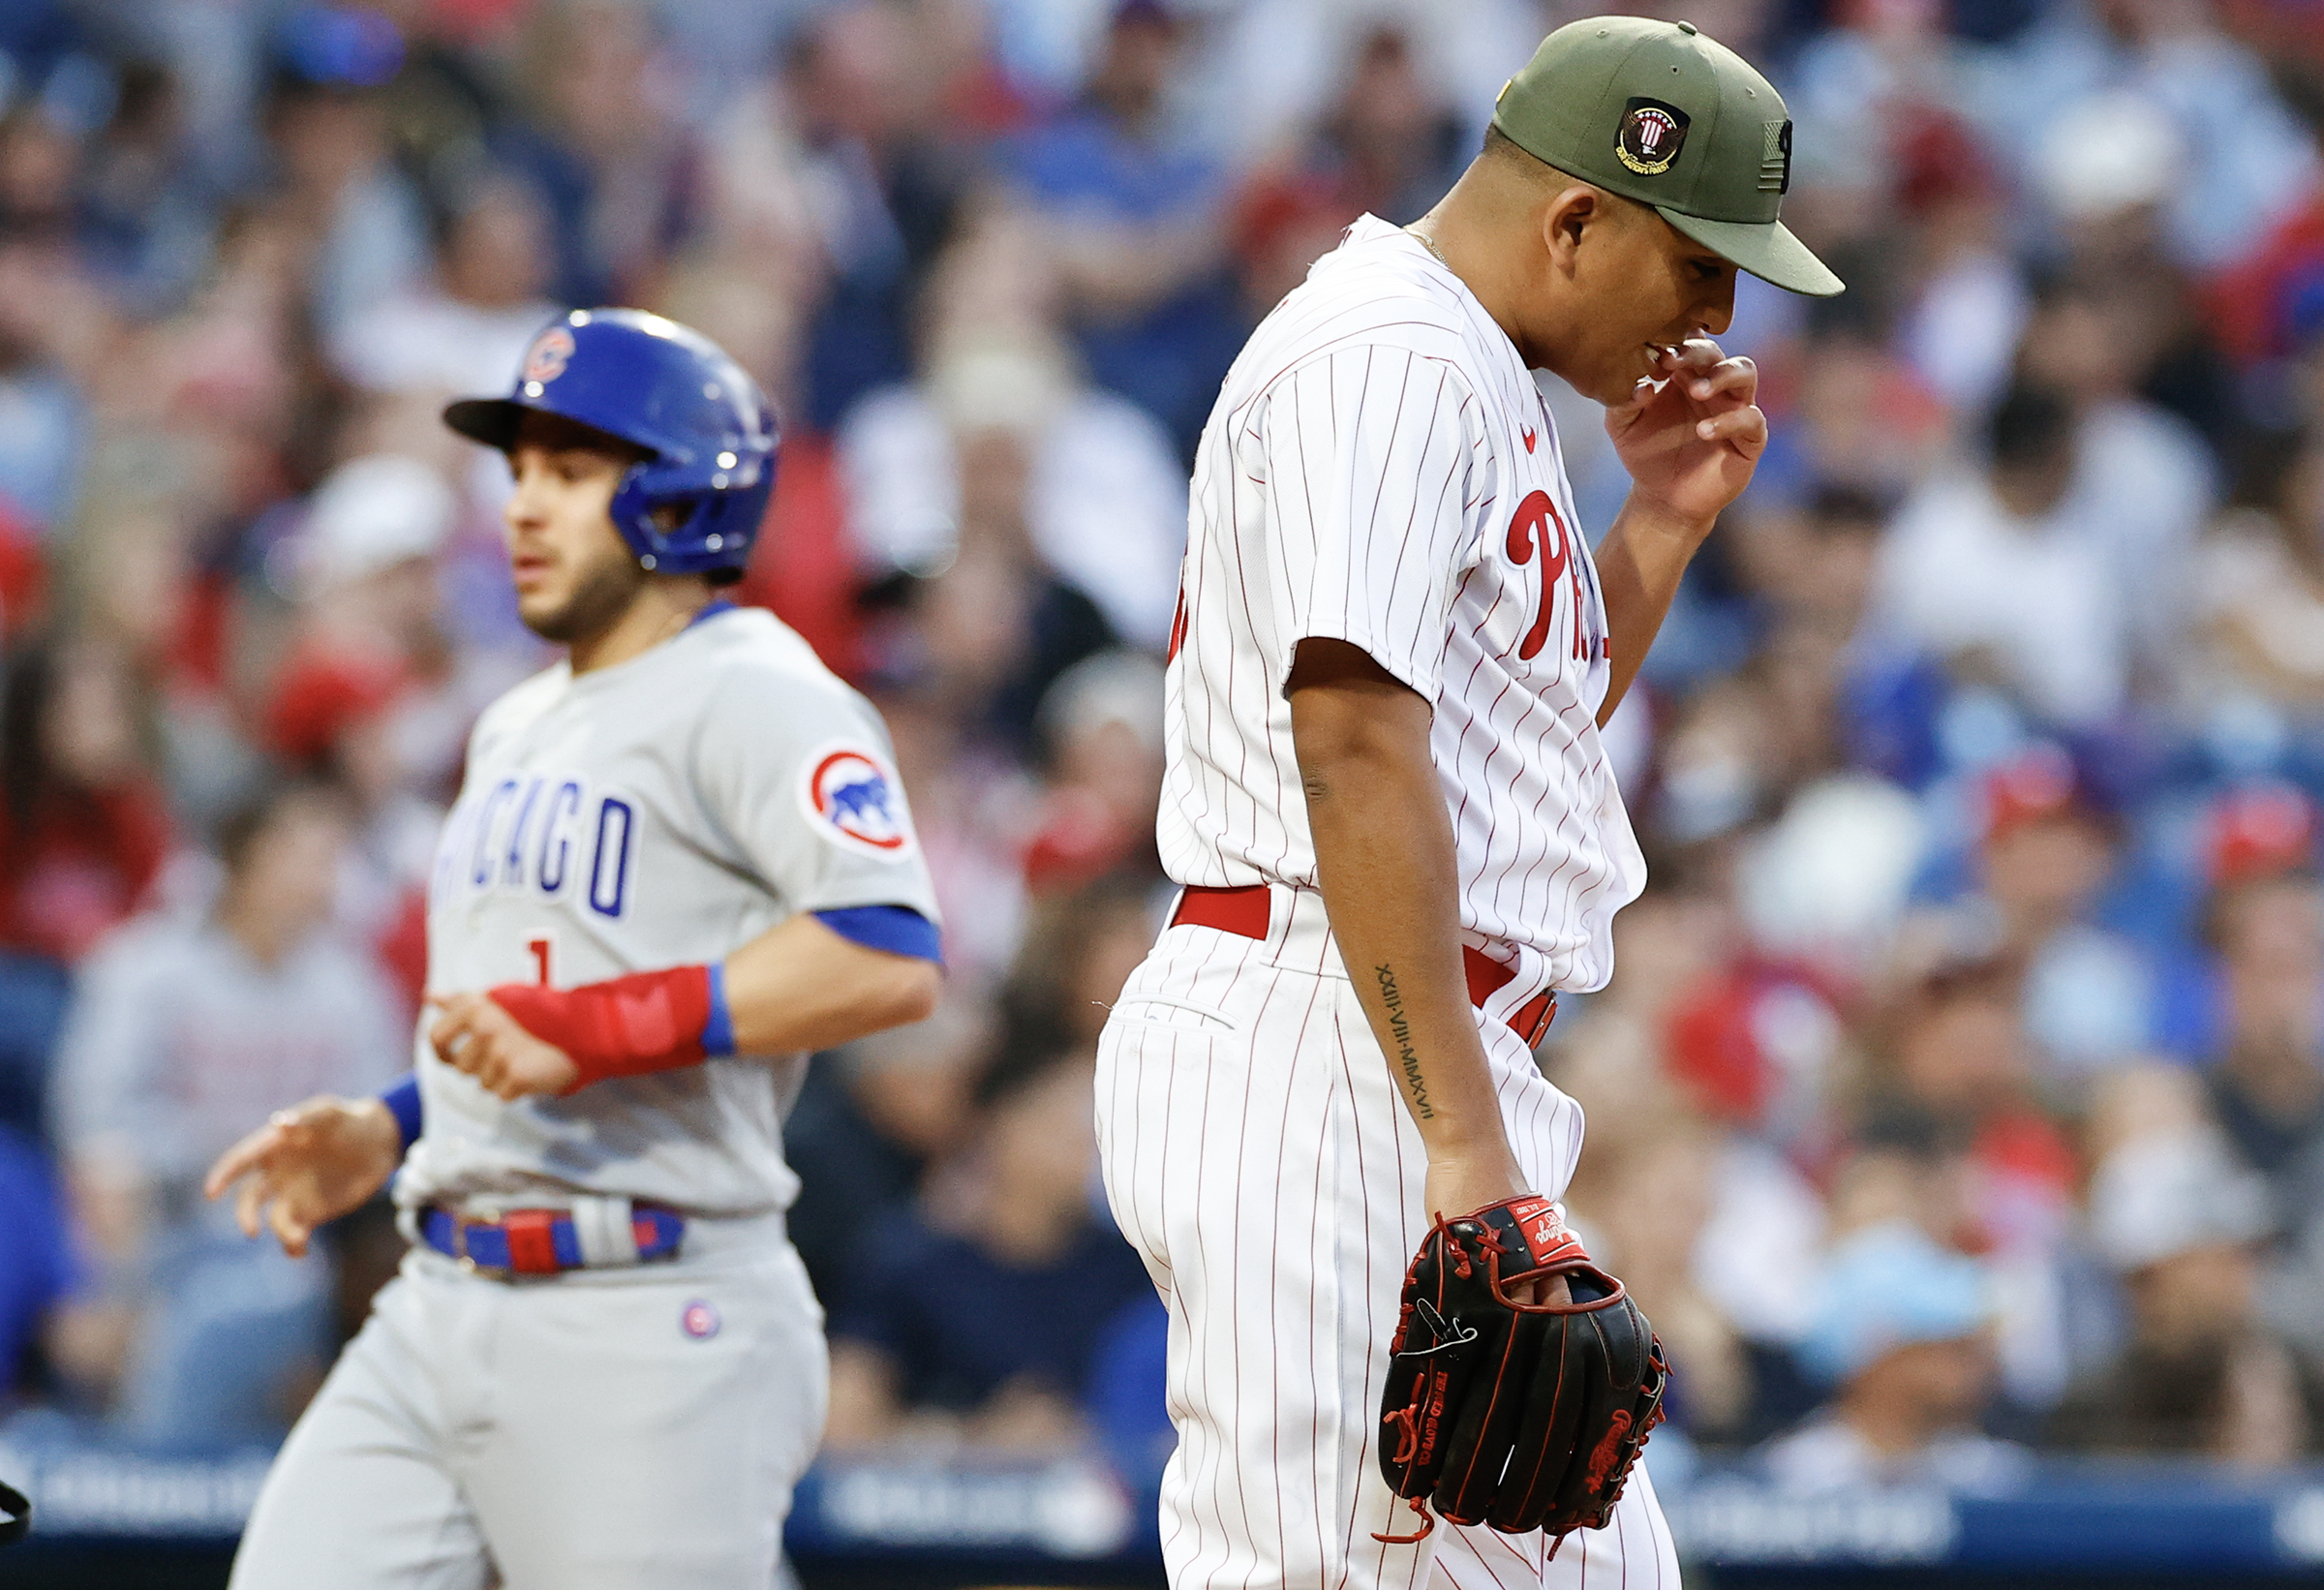 Ranger Suarez, Phillies shut down Cubs